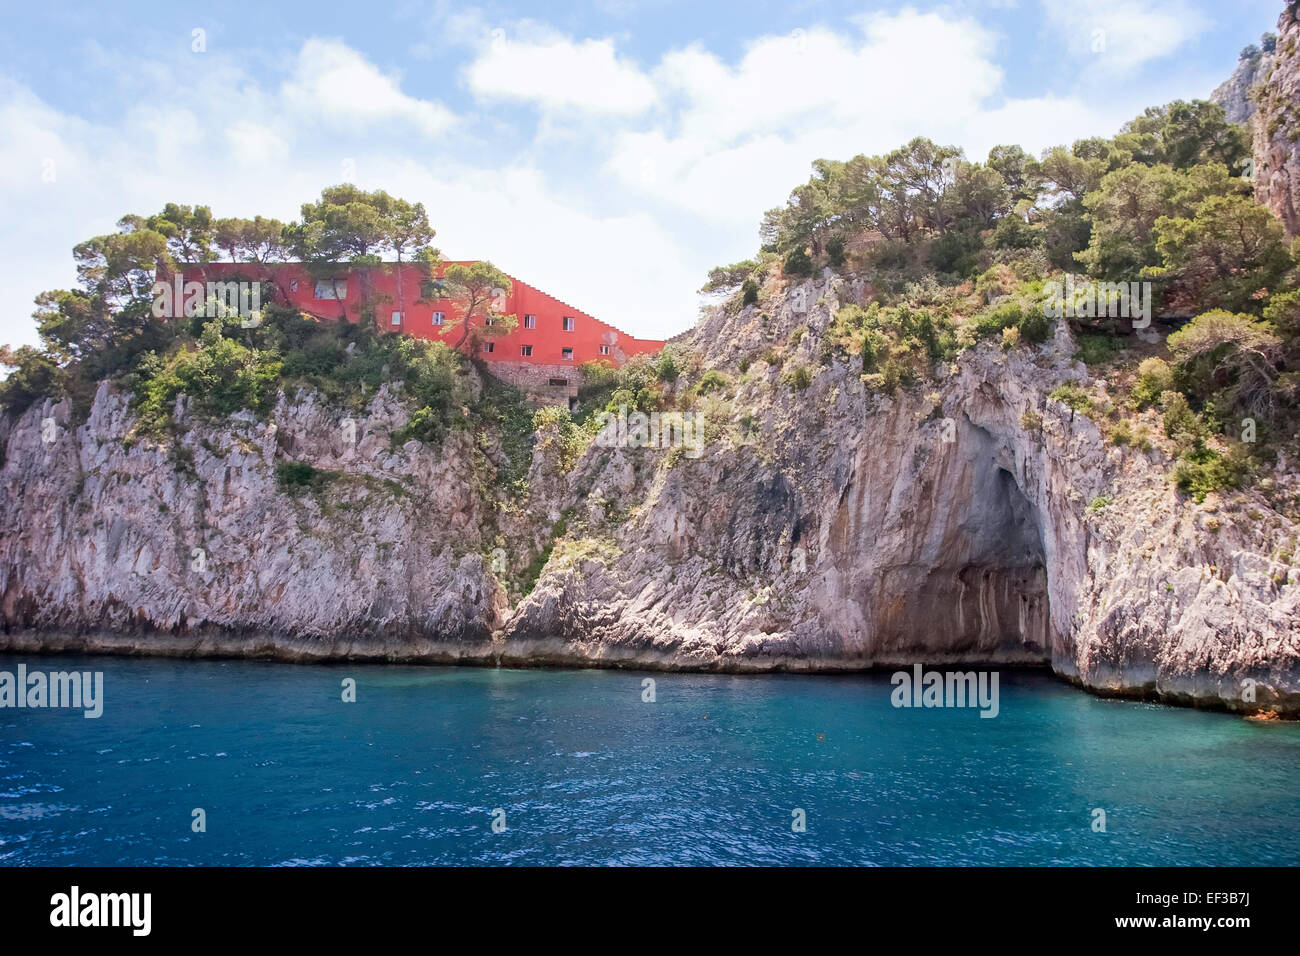 Casa  house Malaparte on Promontory, cap Massulo, Capri, Italy Stock Photo